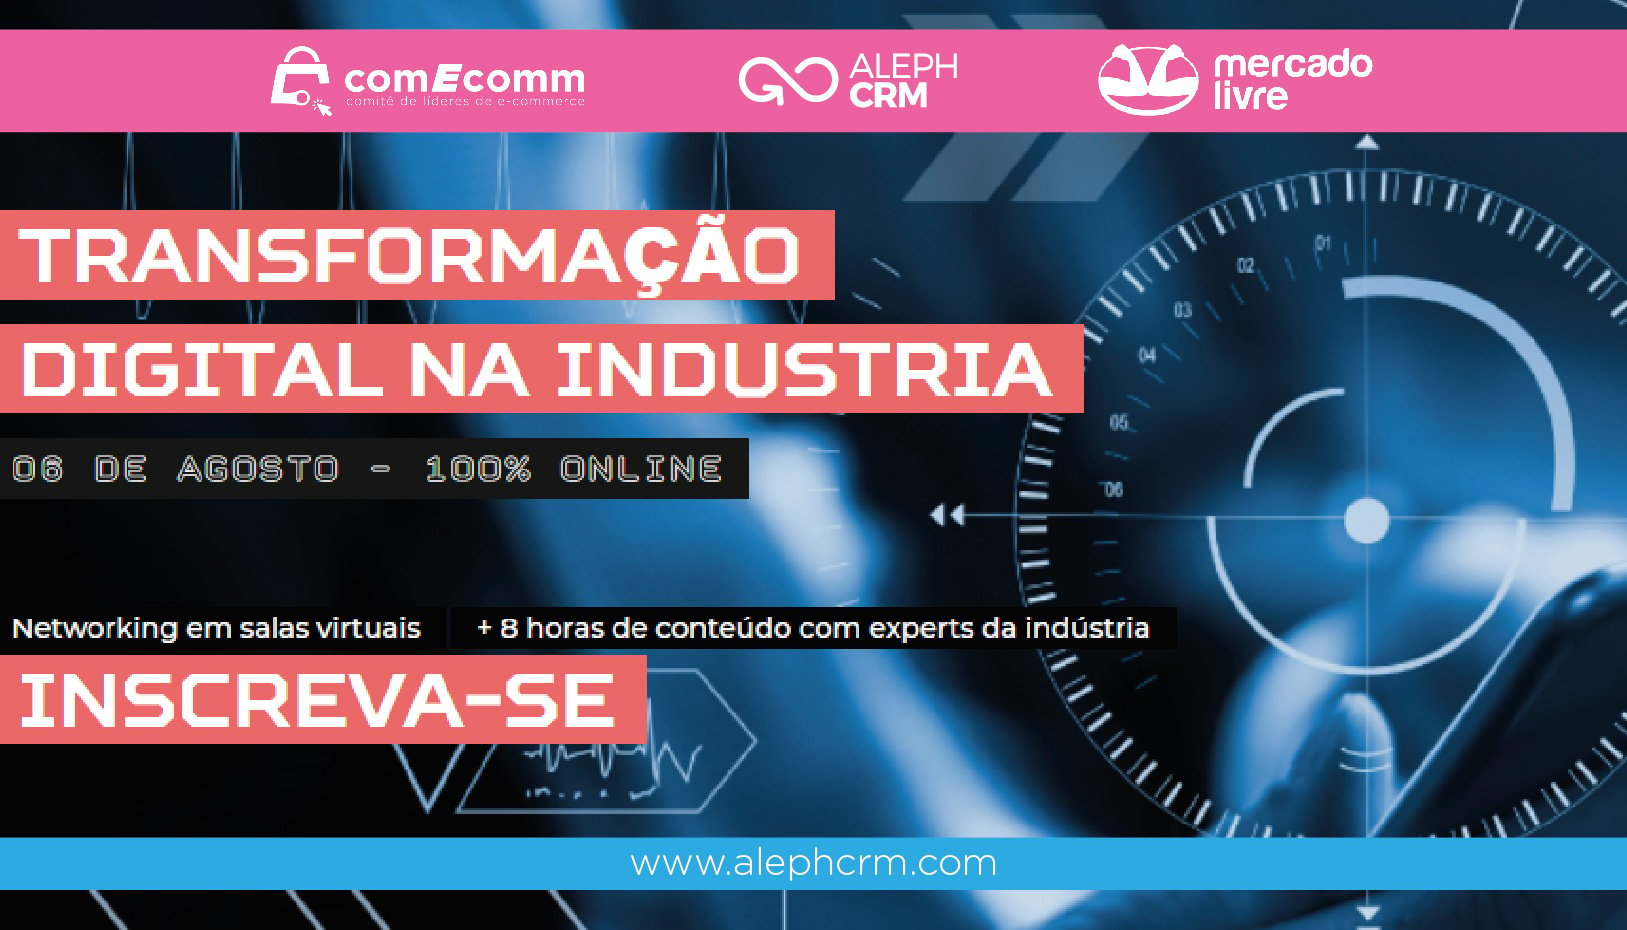 AlephCRM será parte do evento “Transformação digital da indústria” organizado pelo Comitê de Líderes de e-commerce.